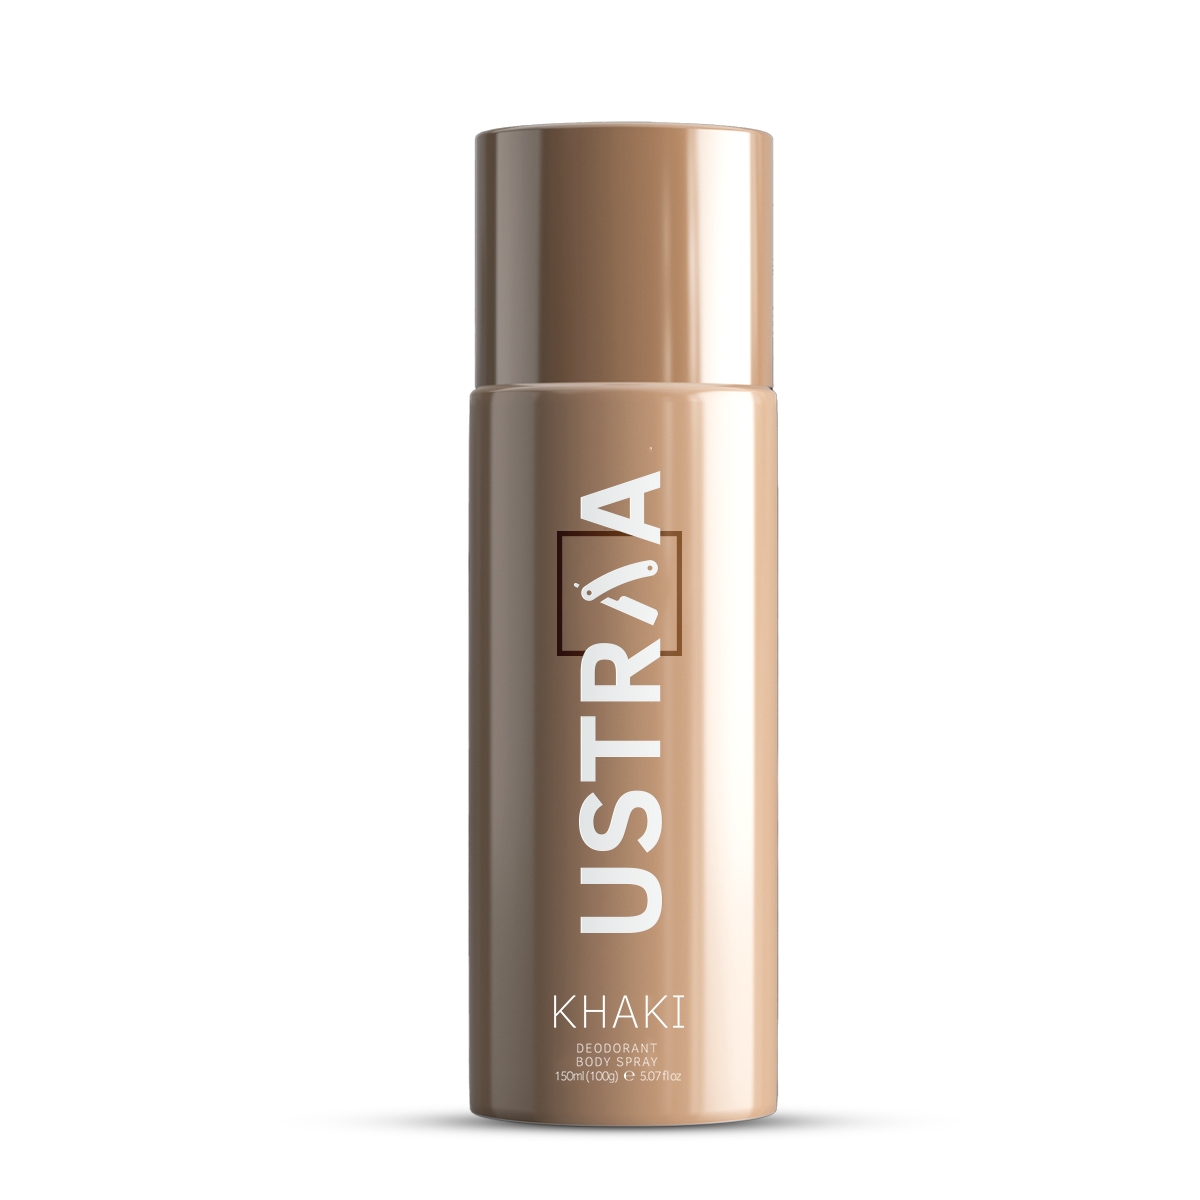 Ustraa Deodorant For Men, Khaki, 150ml